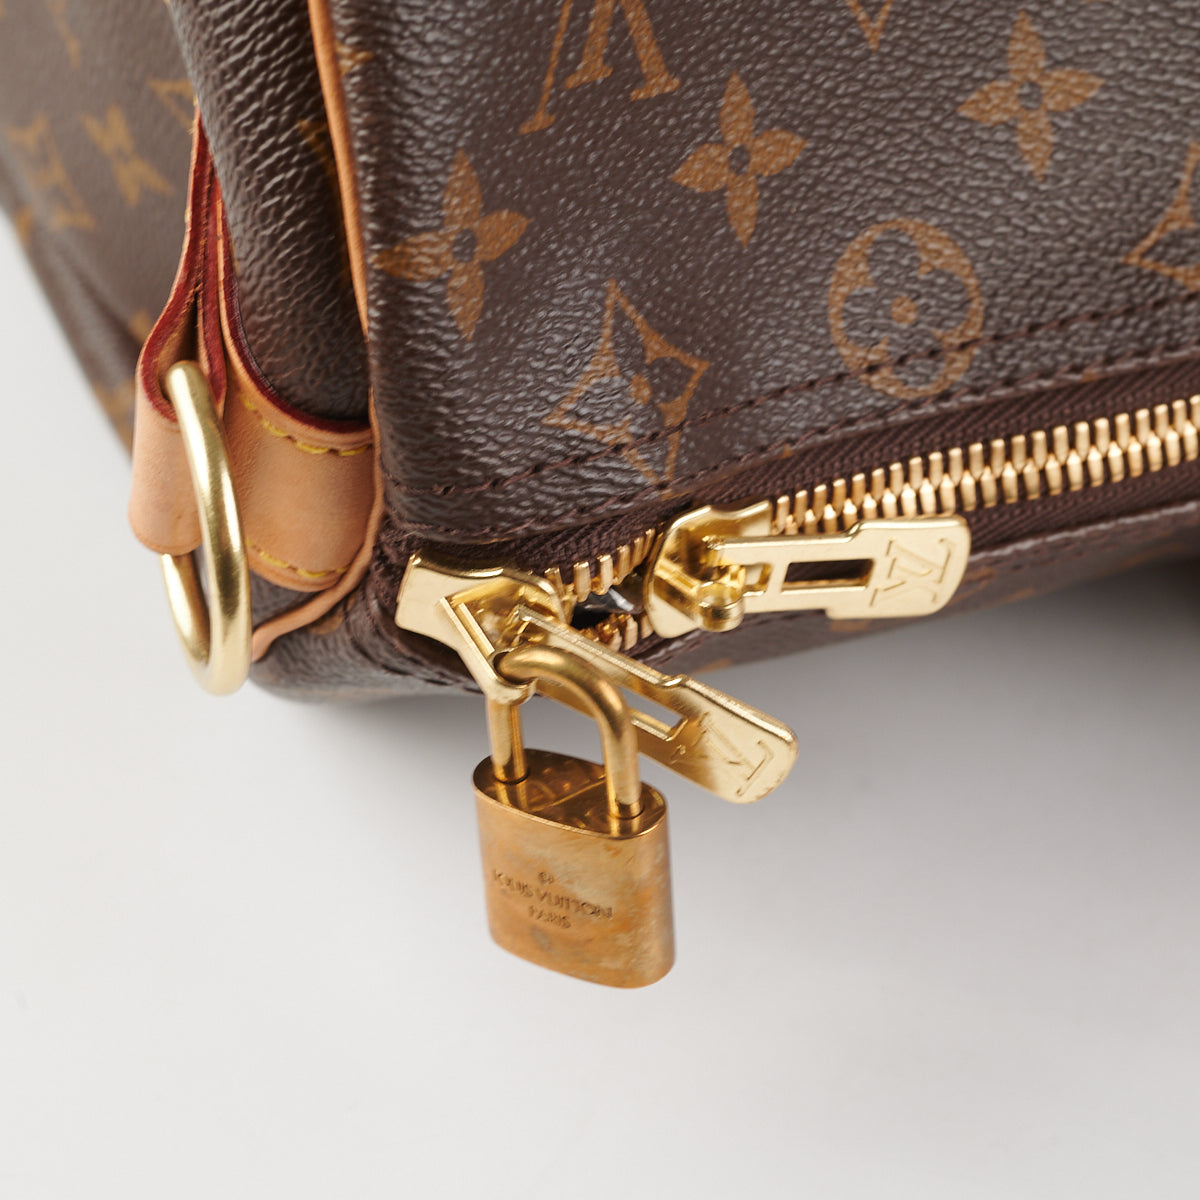 Shop Louis Vuitton Keepall bandoulière 45 (M56711) by HOPE